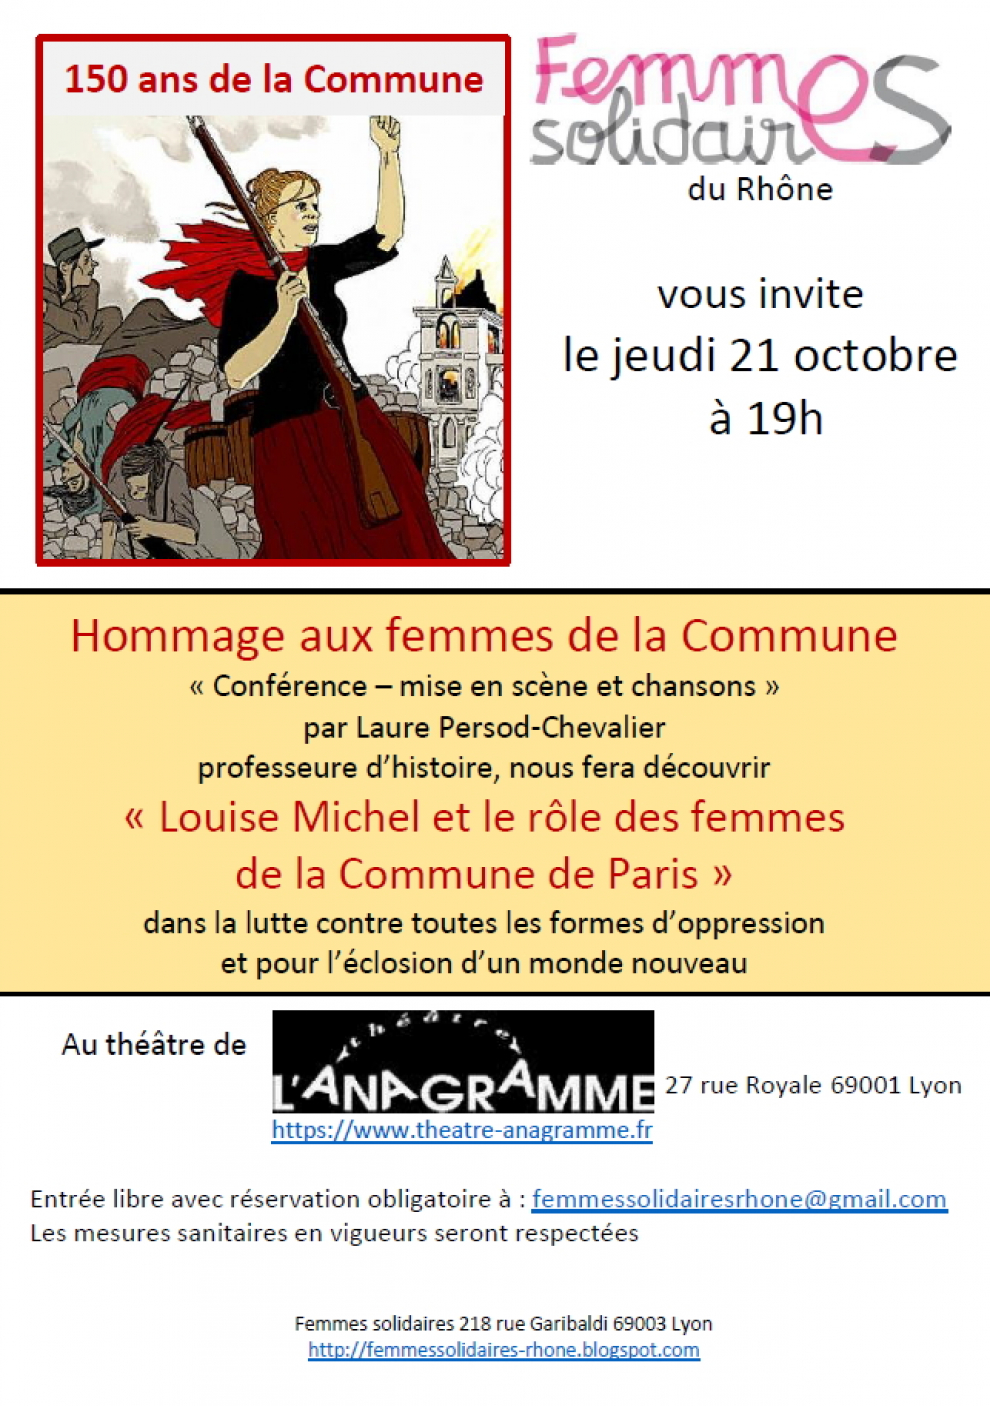 Louise Michel et le rôle des femmes dans la Commune - Affiche